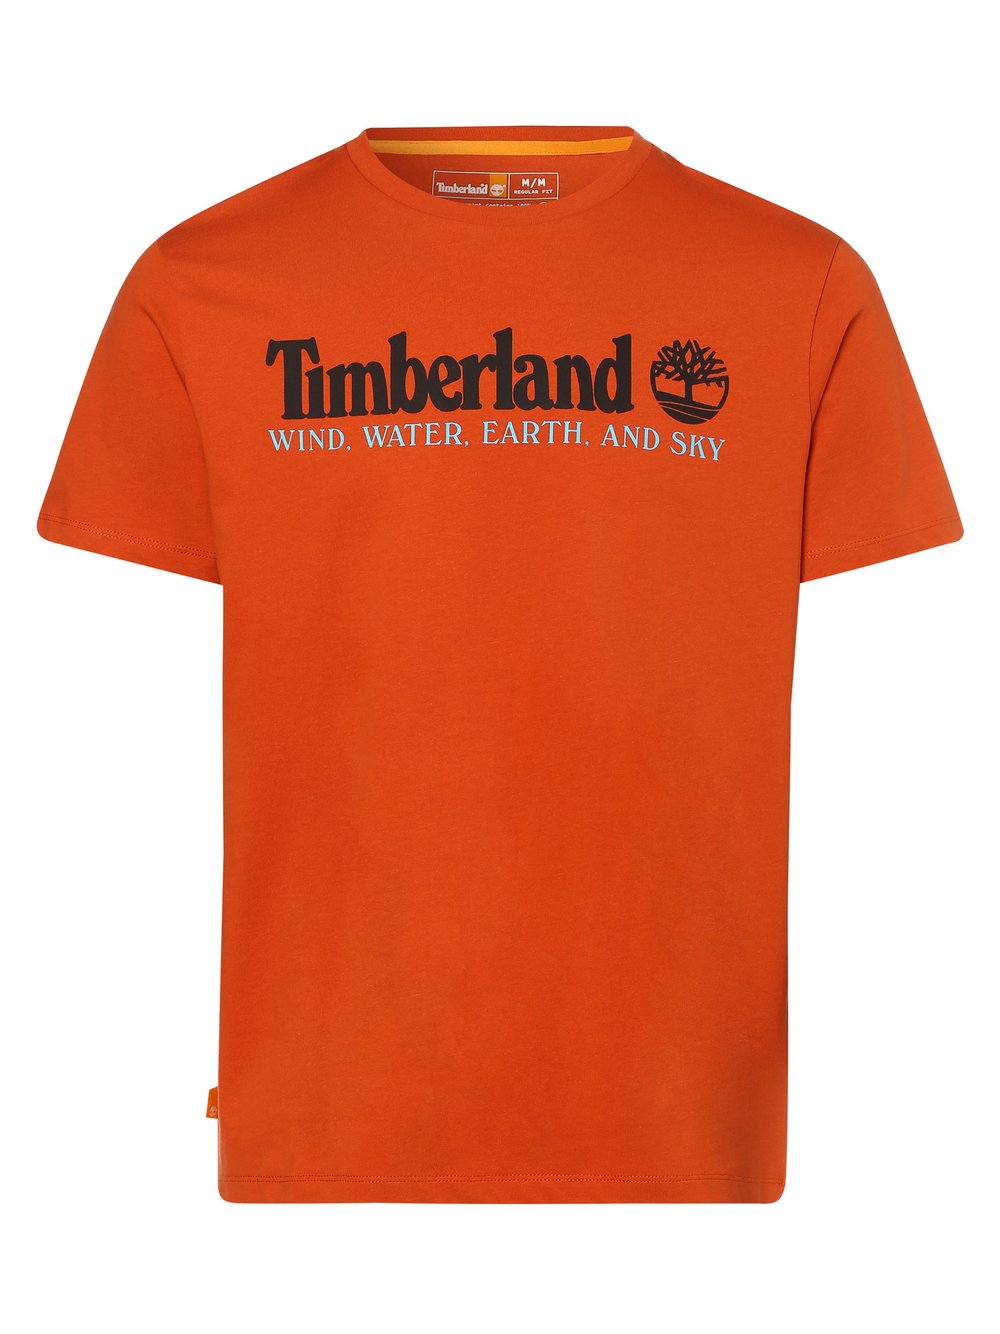 Timberland - T-shirt męski, pomarańczowy